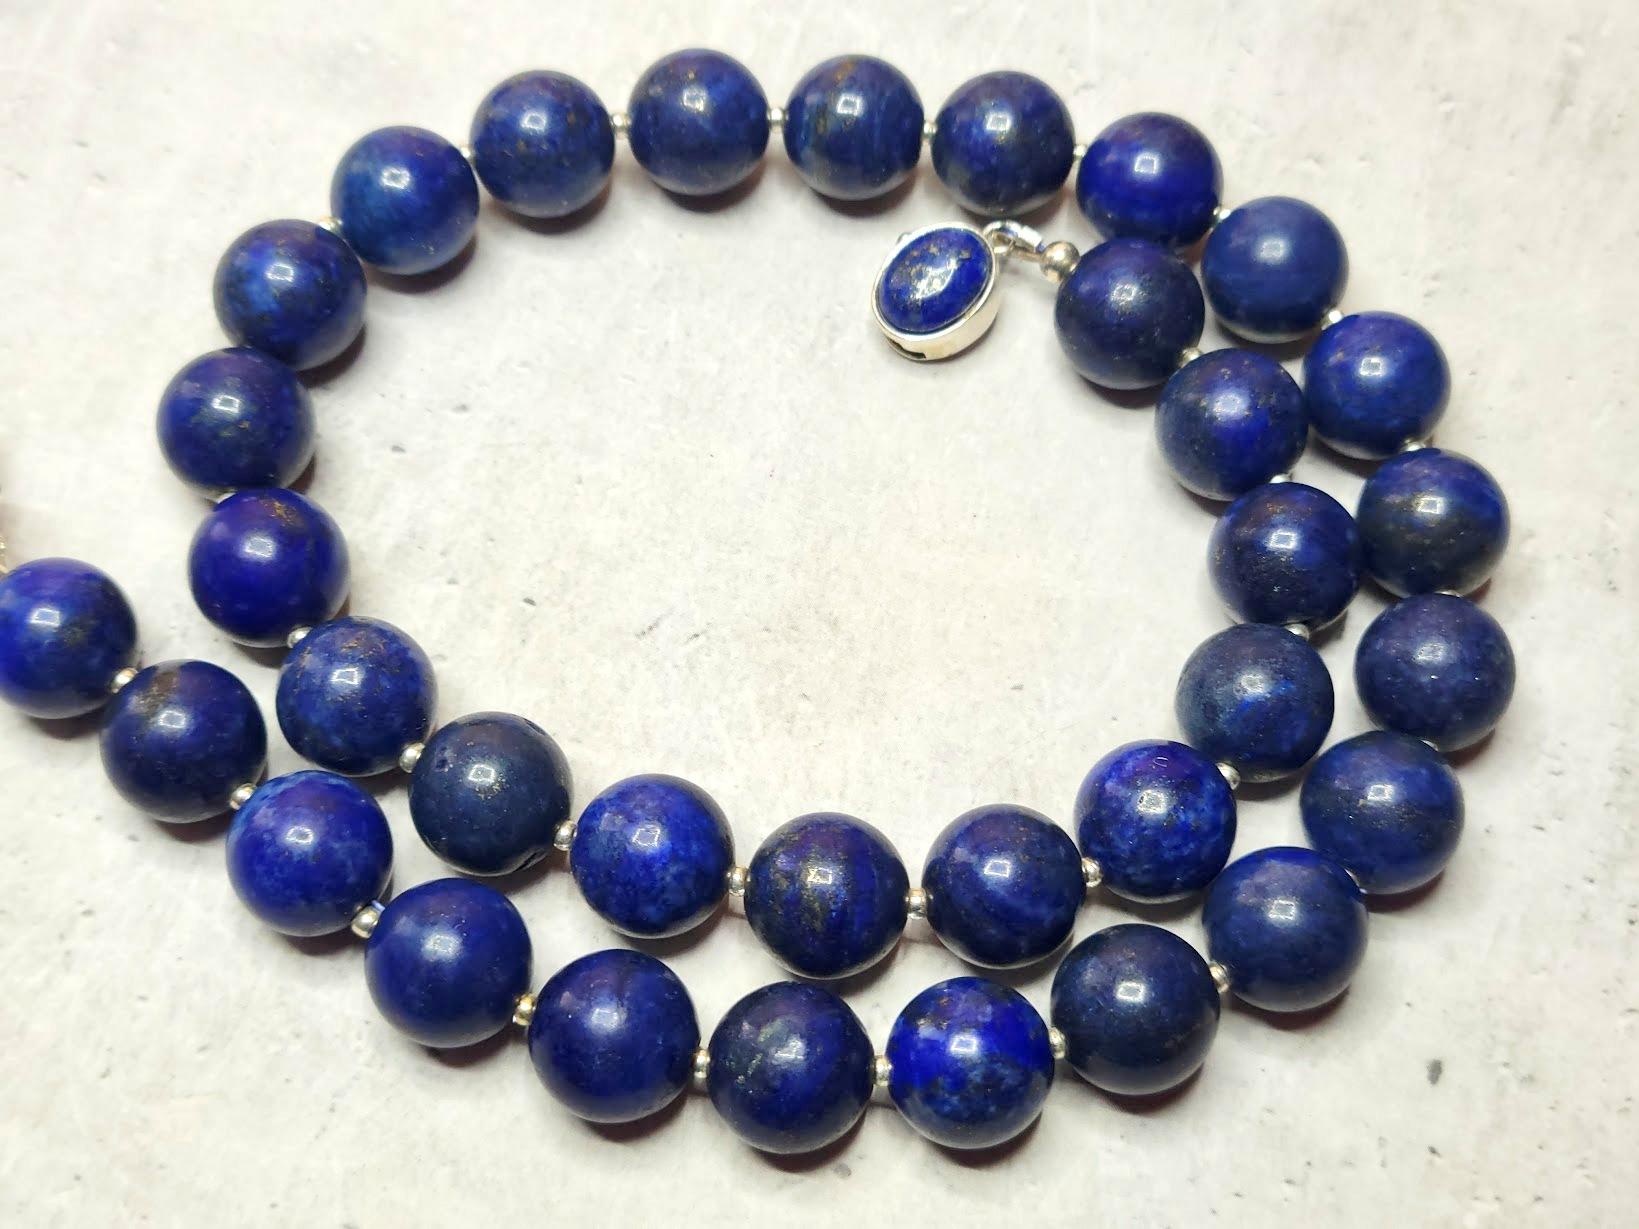 Die Kette ist 17,5 Zoll (44,5 cm) lang, und die glatten runden Perlen sind 12 mm groß.
Die Lapislazuli-Perlen sind dunkelblau. Lapislazuli hat sichtbare Kalzit- und goldene Pyritflecken.
Natürliche Farbe, nicht gefärbt. Es wurden keine thermischen